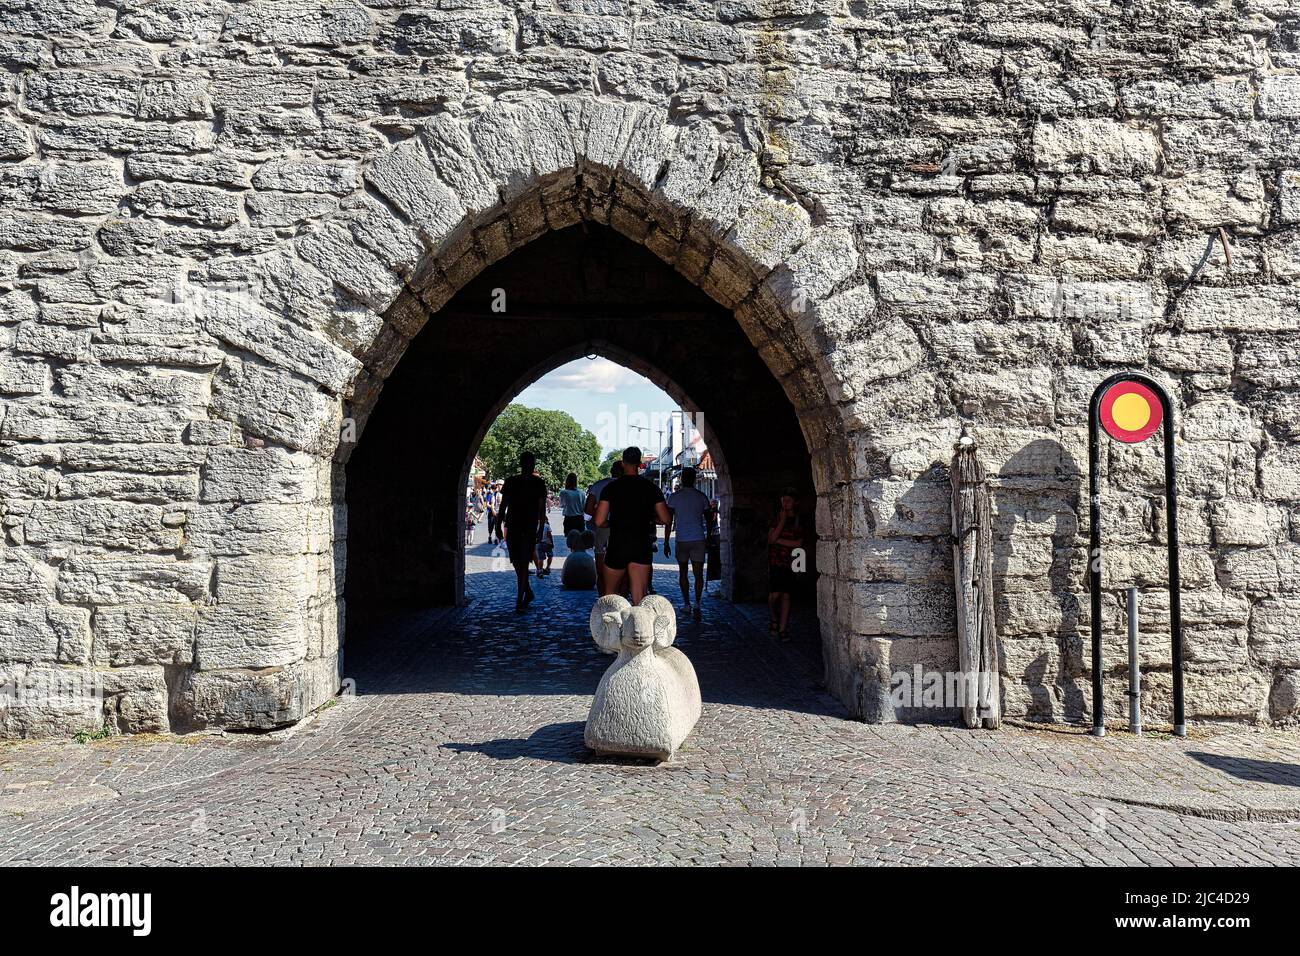 Porta nel muro della città con scultura in pietra, pecore Gotland come barriera, bollards nella zona pedonale, Città Vecchia di Visby, Gotland Island, Svezia Foto Stock